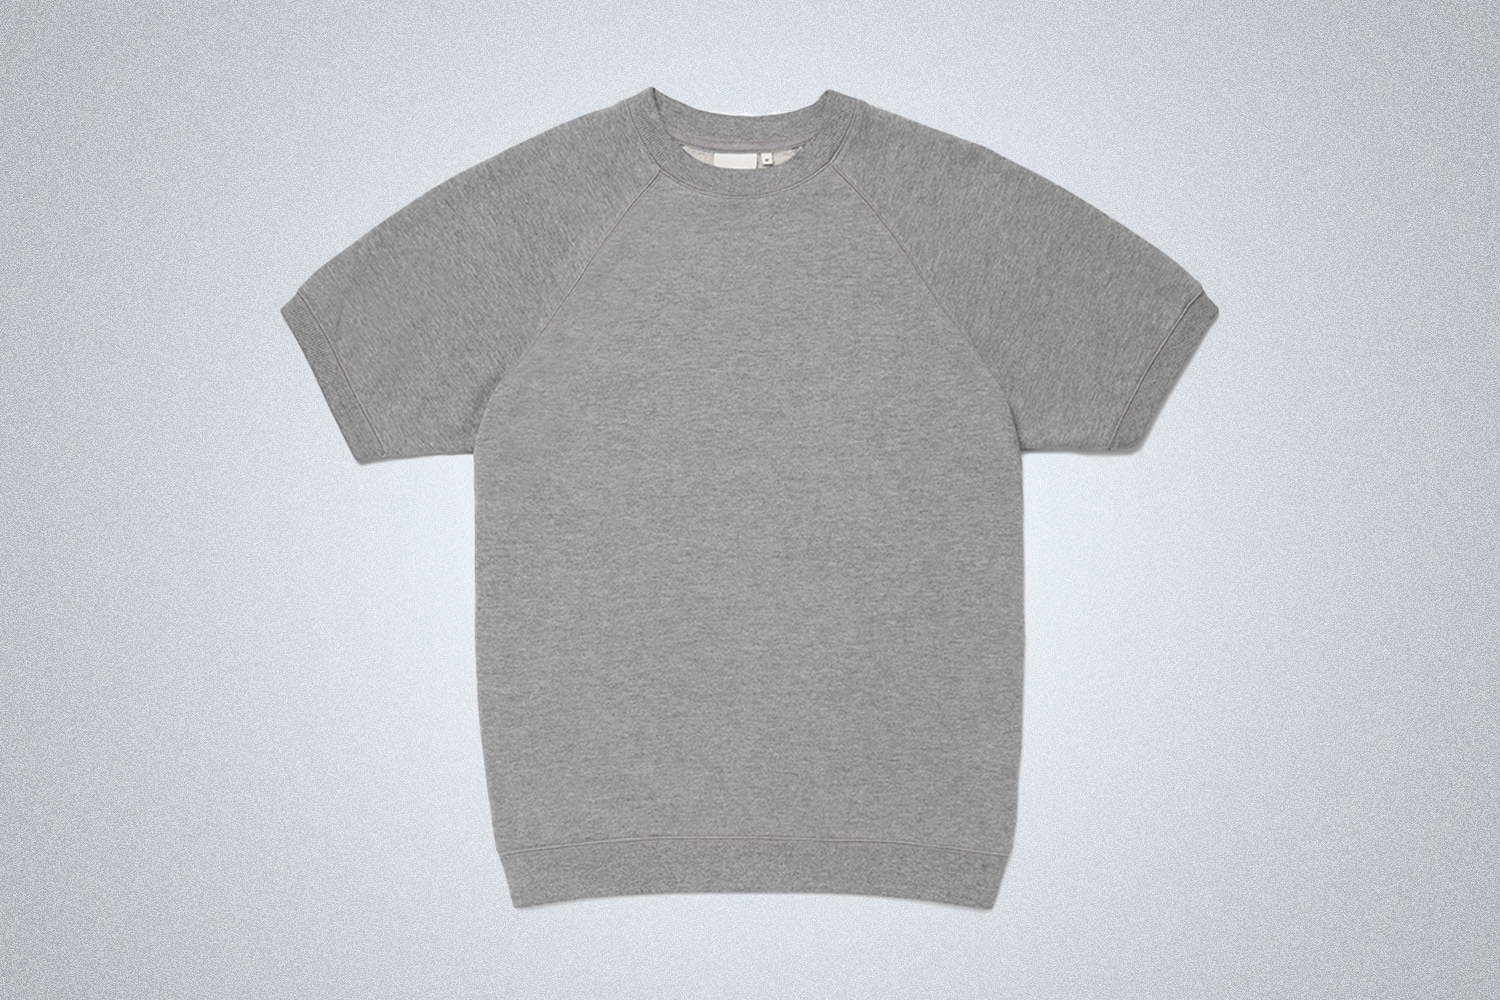 a grey shortsleeve sweatshirt